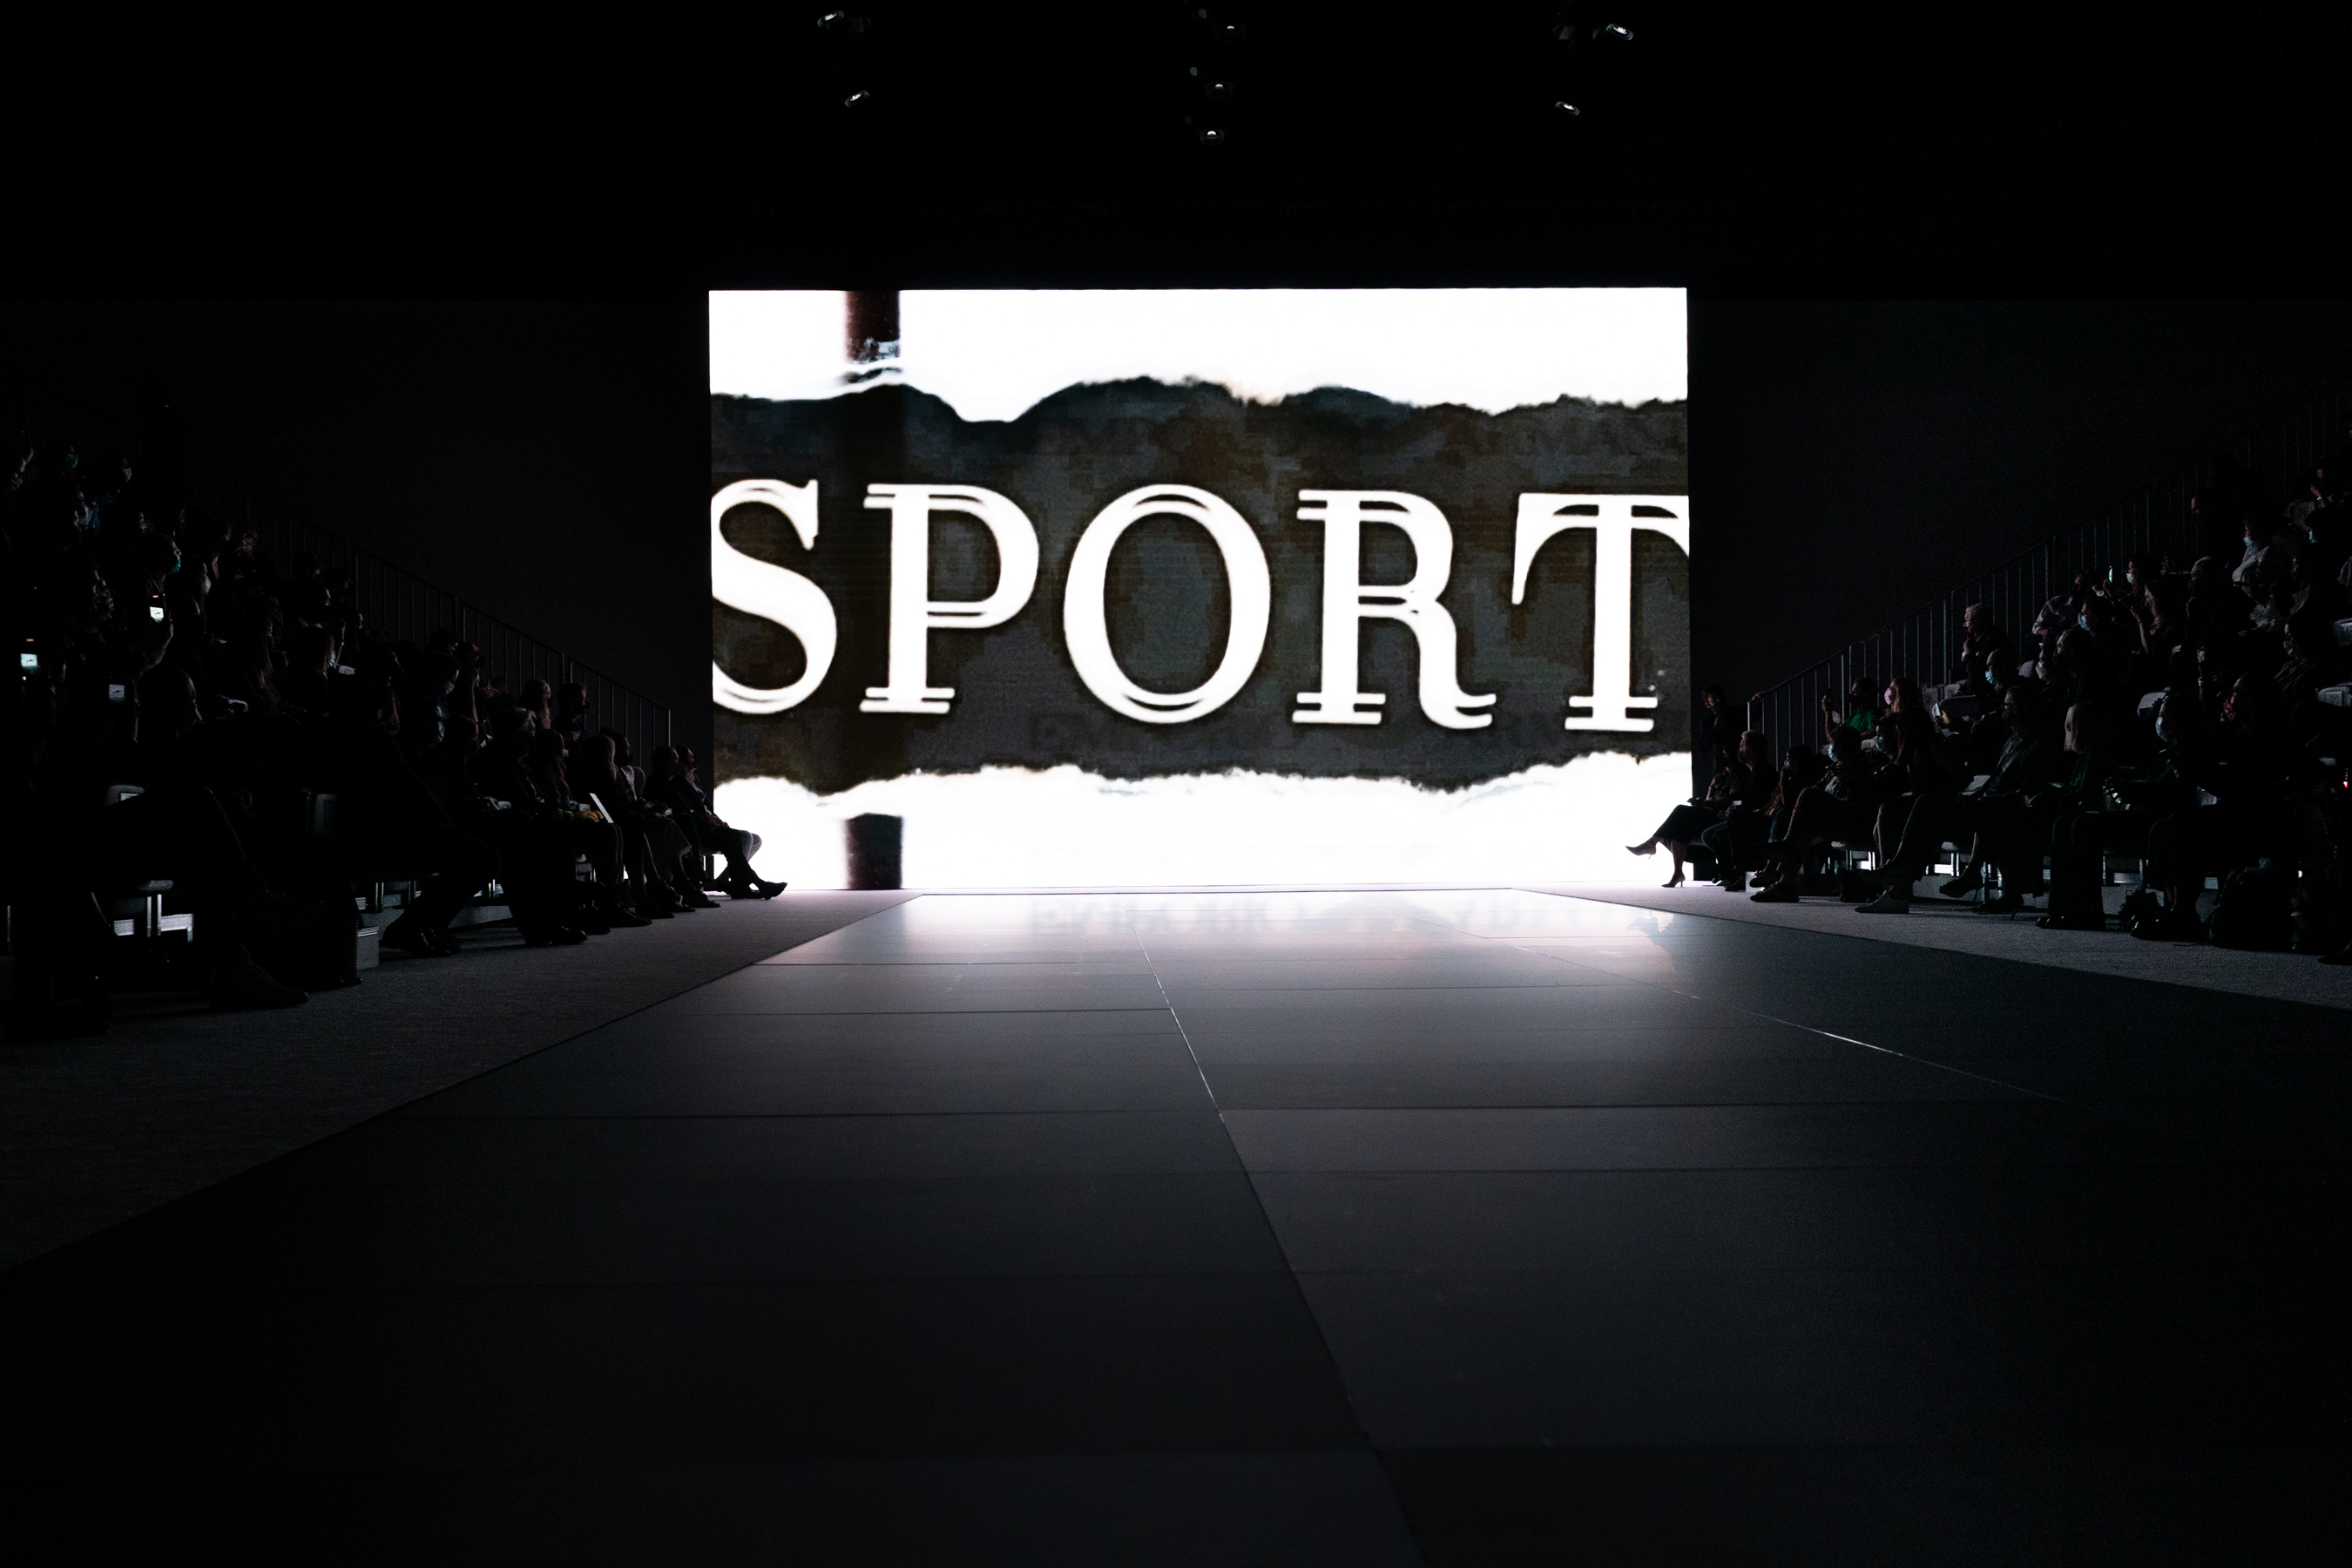 Emporio Armani Spring 2022 Atmosphere Fashion Show